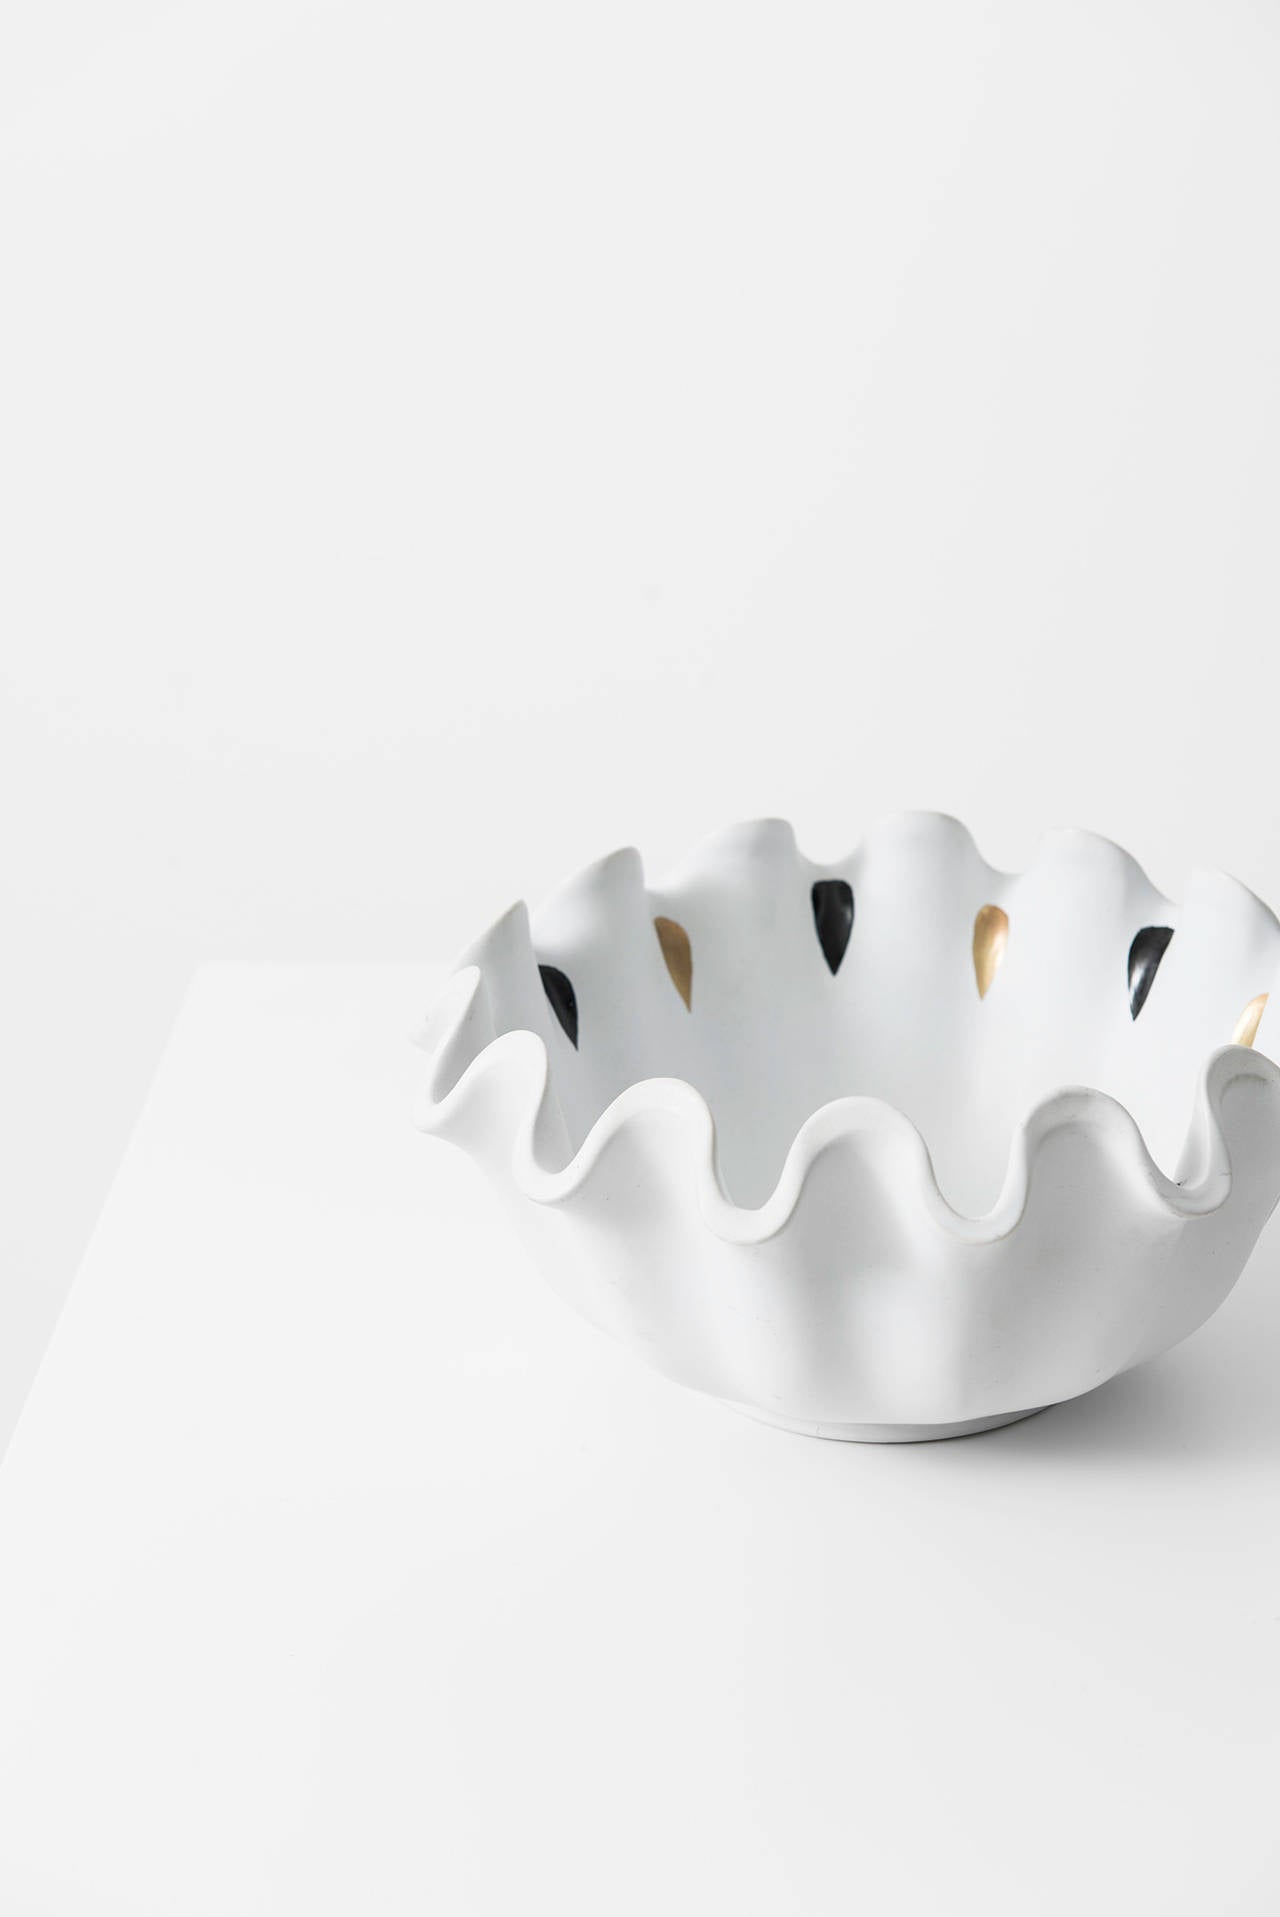 Swedish Wilhelm Kåge Ceramic Bowl Model Våga by Gustavsberg in Sweden